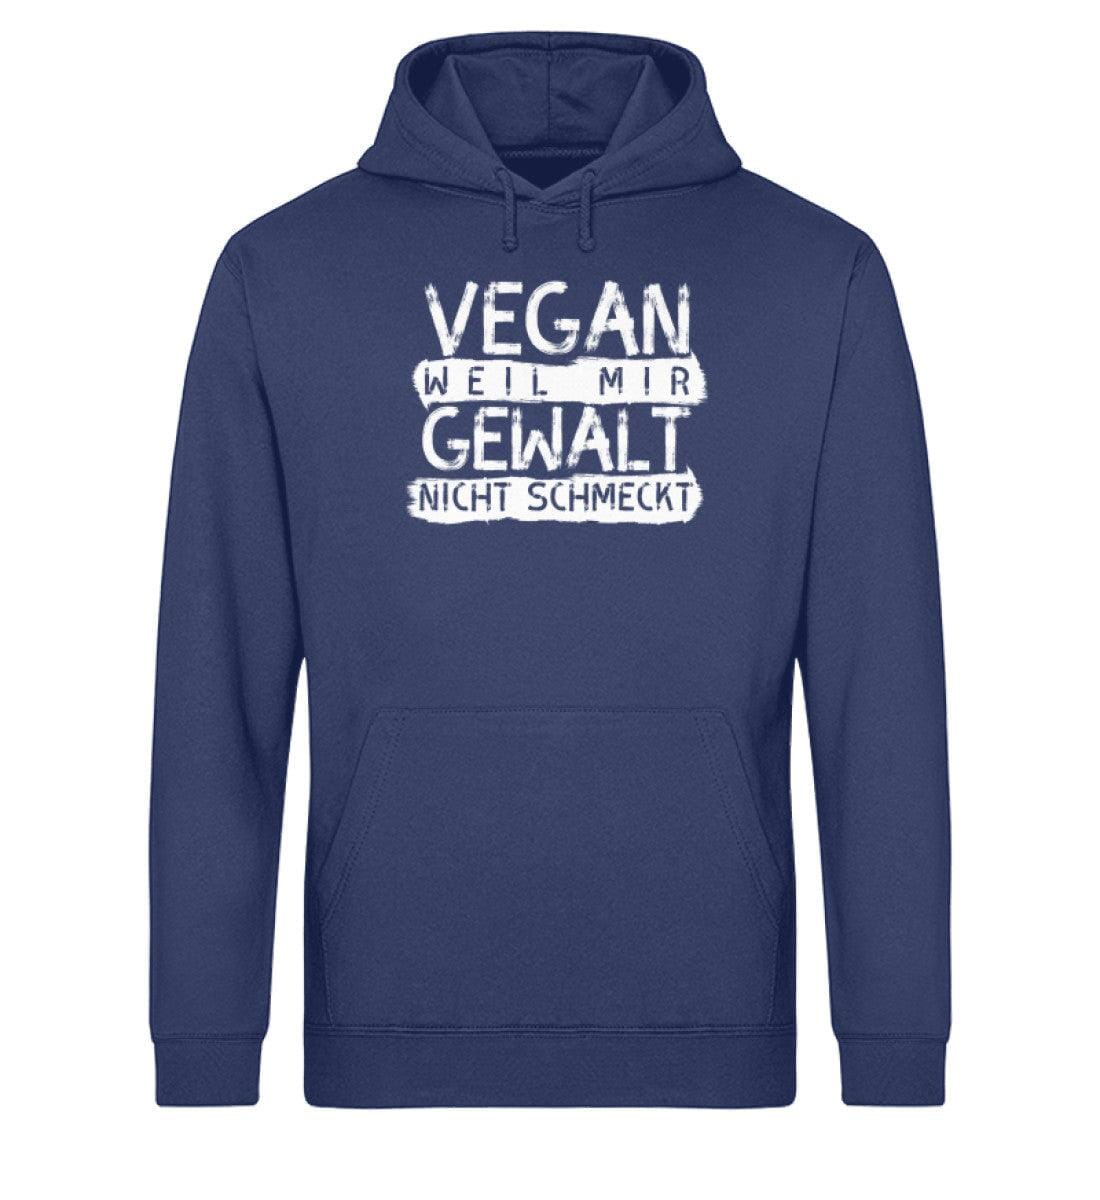 Vegan weil mir Gewalt nicht schmeckt - Unisex Organic Hoodie Drummer Hoodie ST/ST Shirtee French Navy XS 